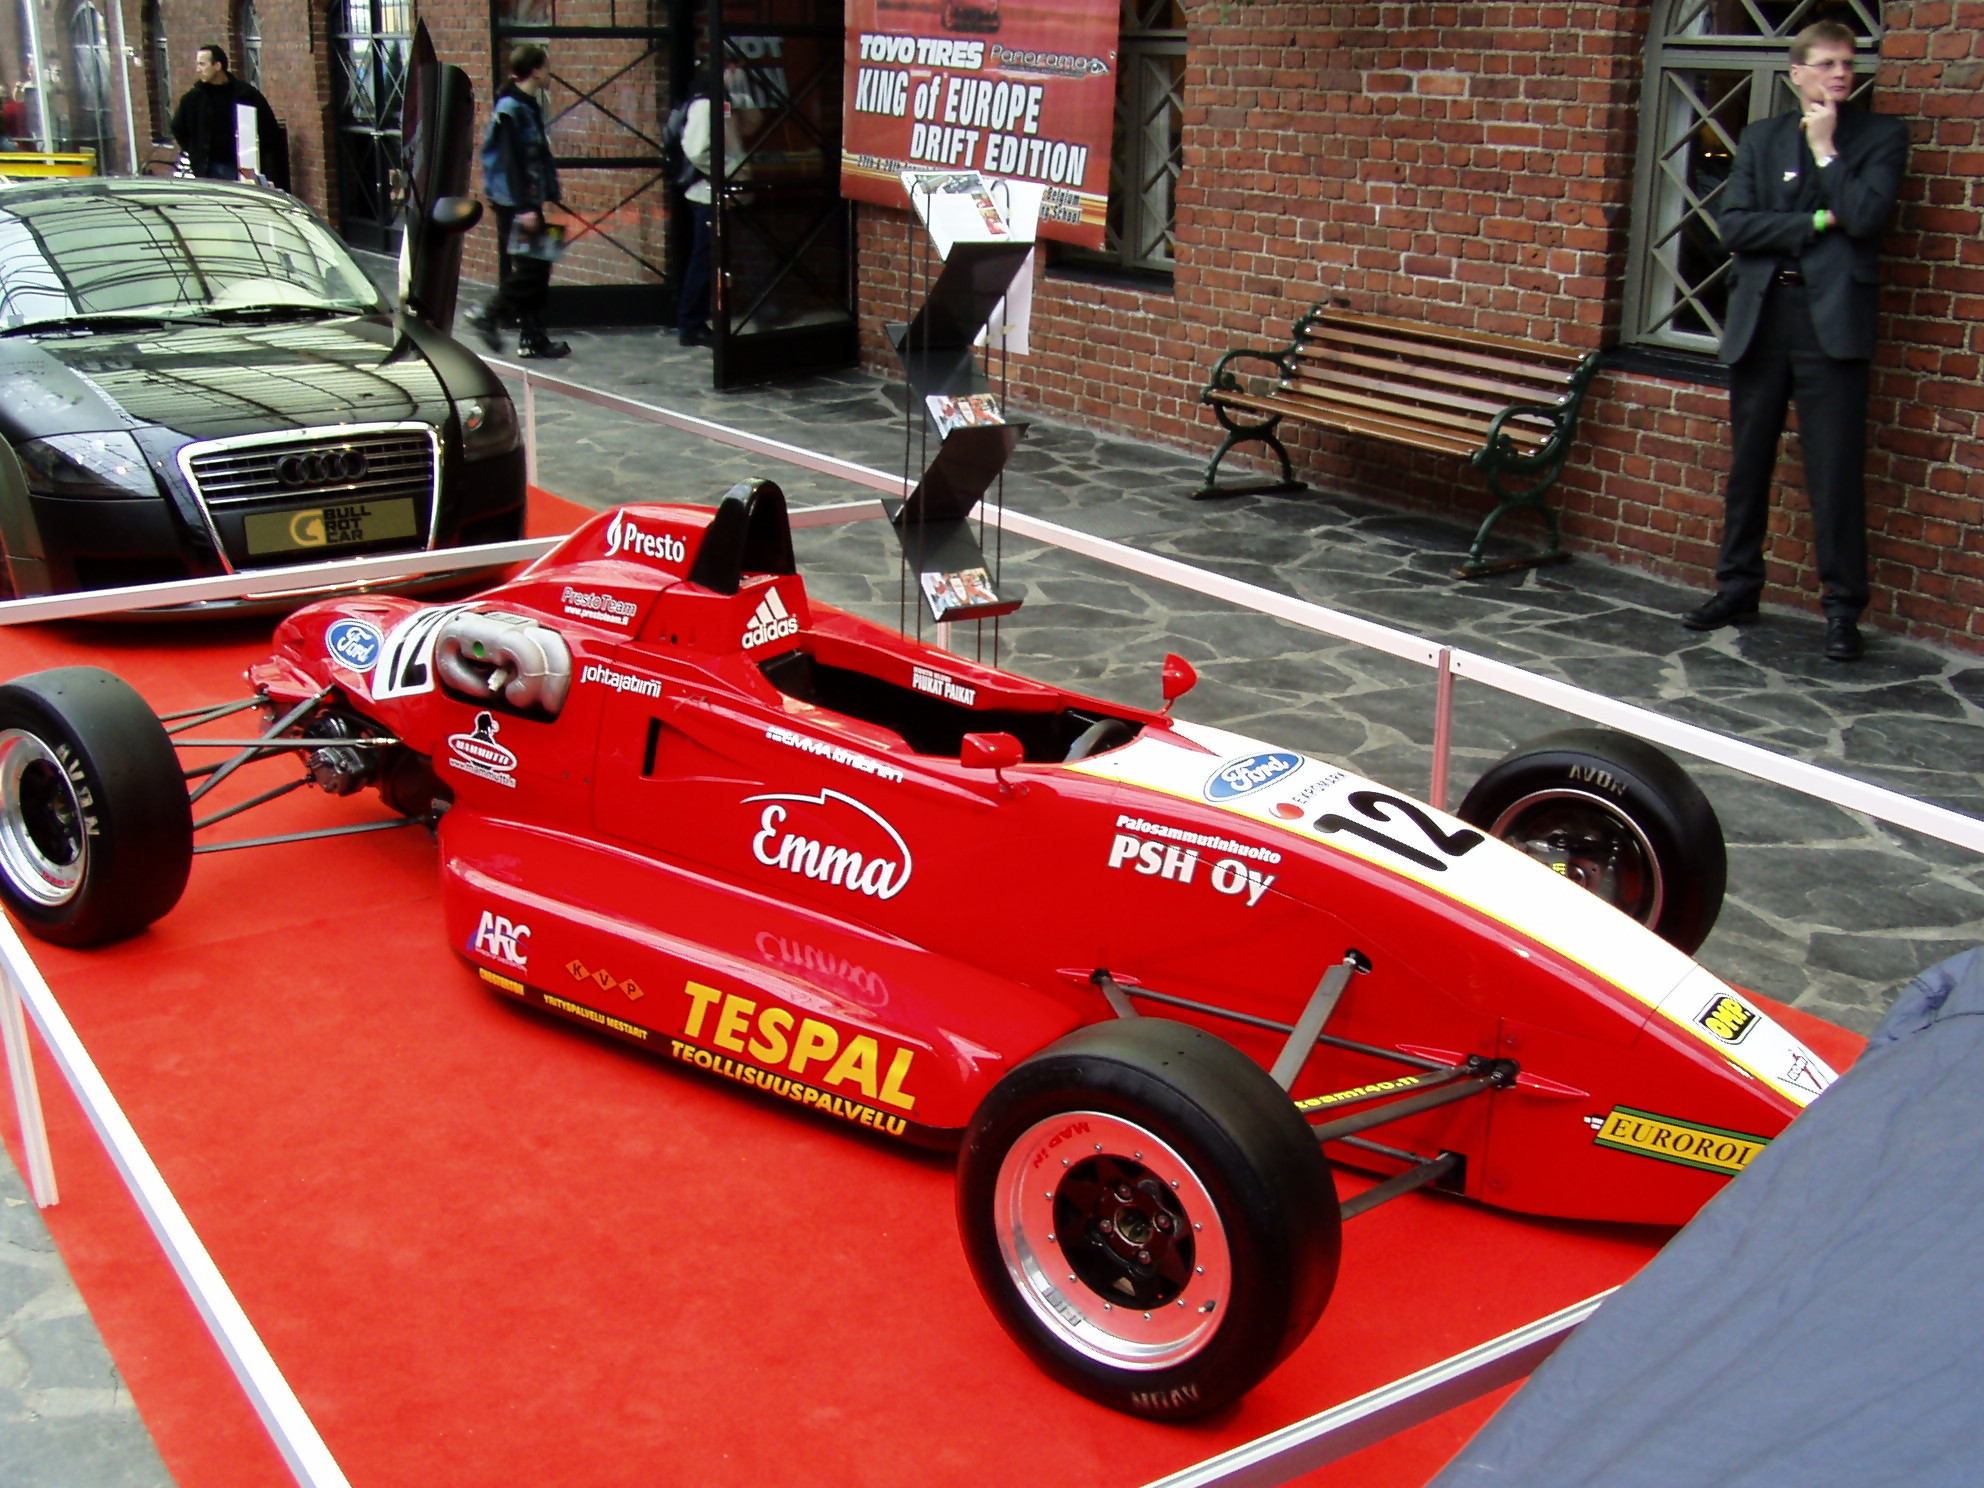 Eurocar Show 2005, Emma KimilÃ¤isen Formula